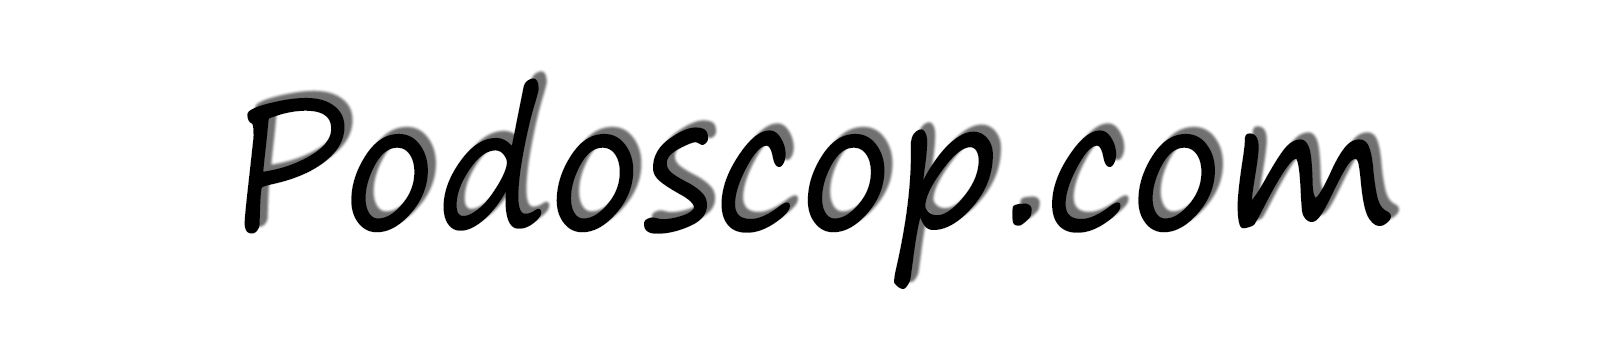 Podoscope Diagnostic